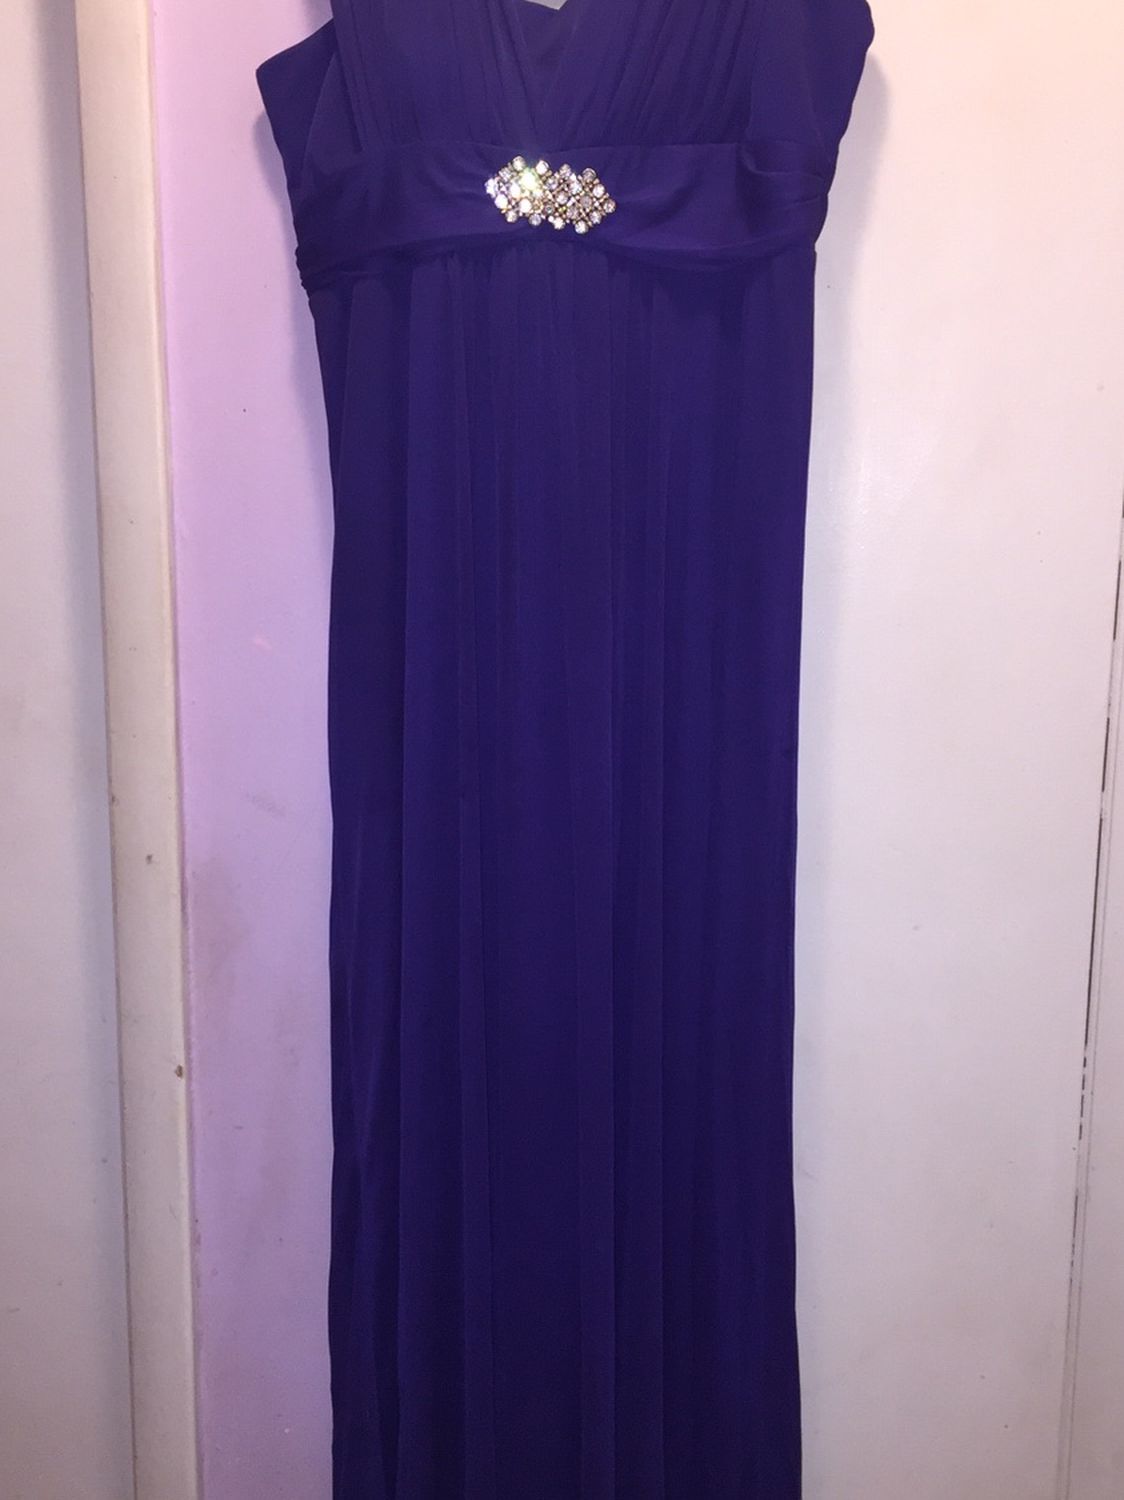 ONYX Nite Dress NWT  Purple size 12 